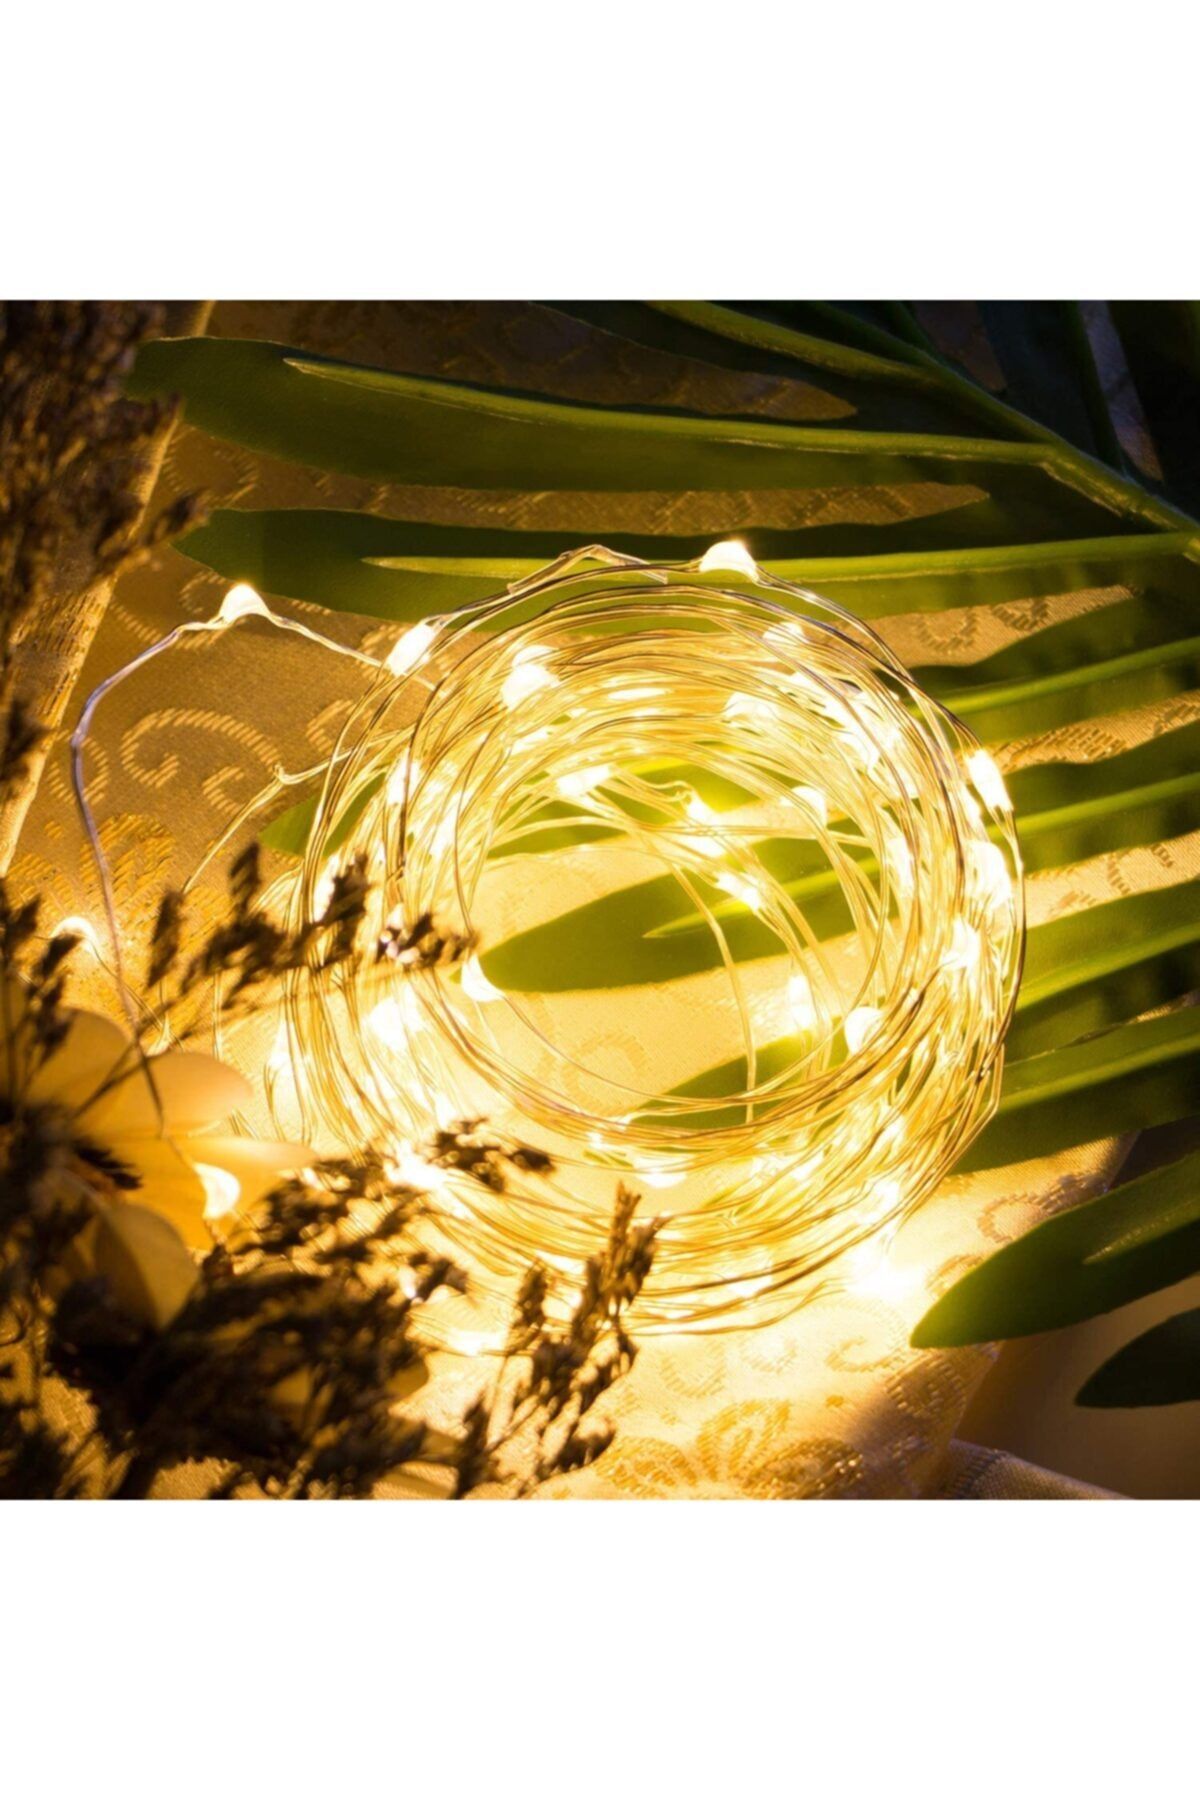 Lumenn Peri Led Işık Pilli 3 Metre Gün Işığı|su Geçirmez Esnek Ve Güçlü Işık Performansı-tel Şerit Led